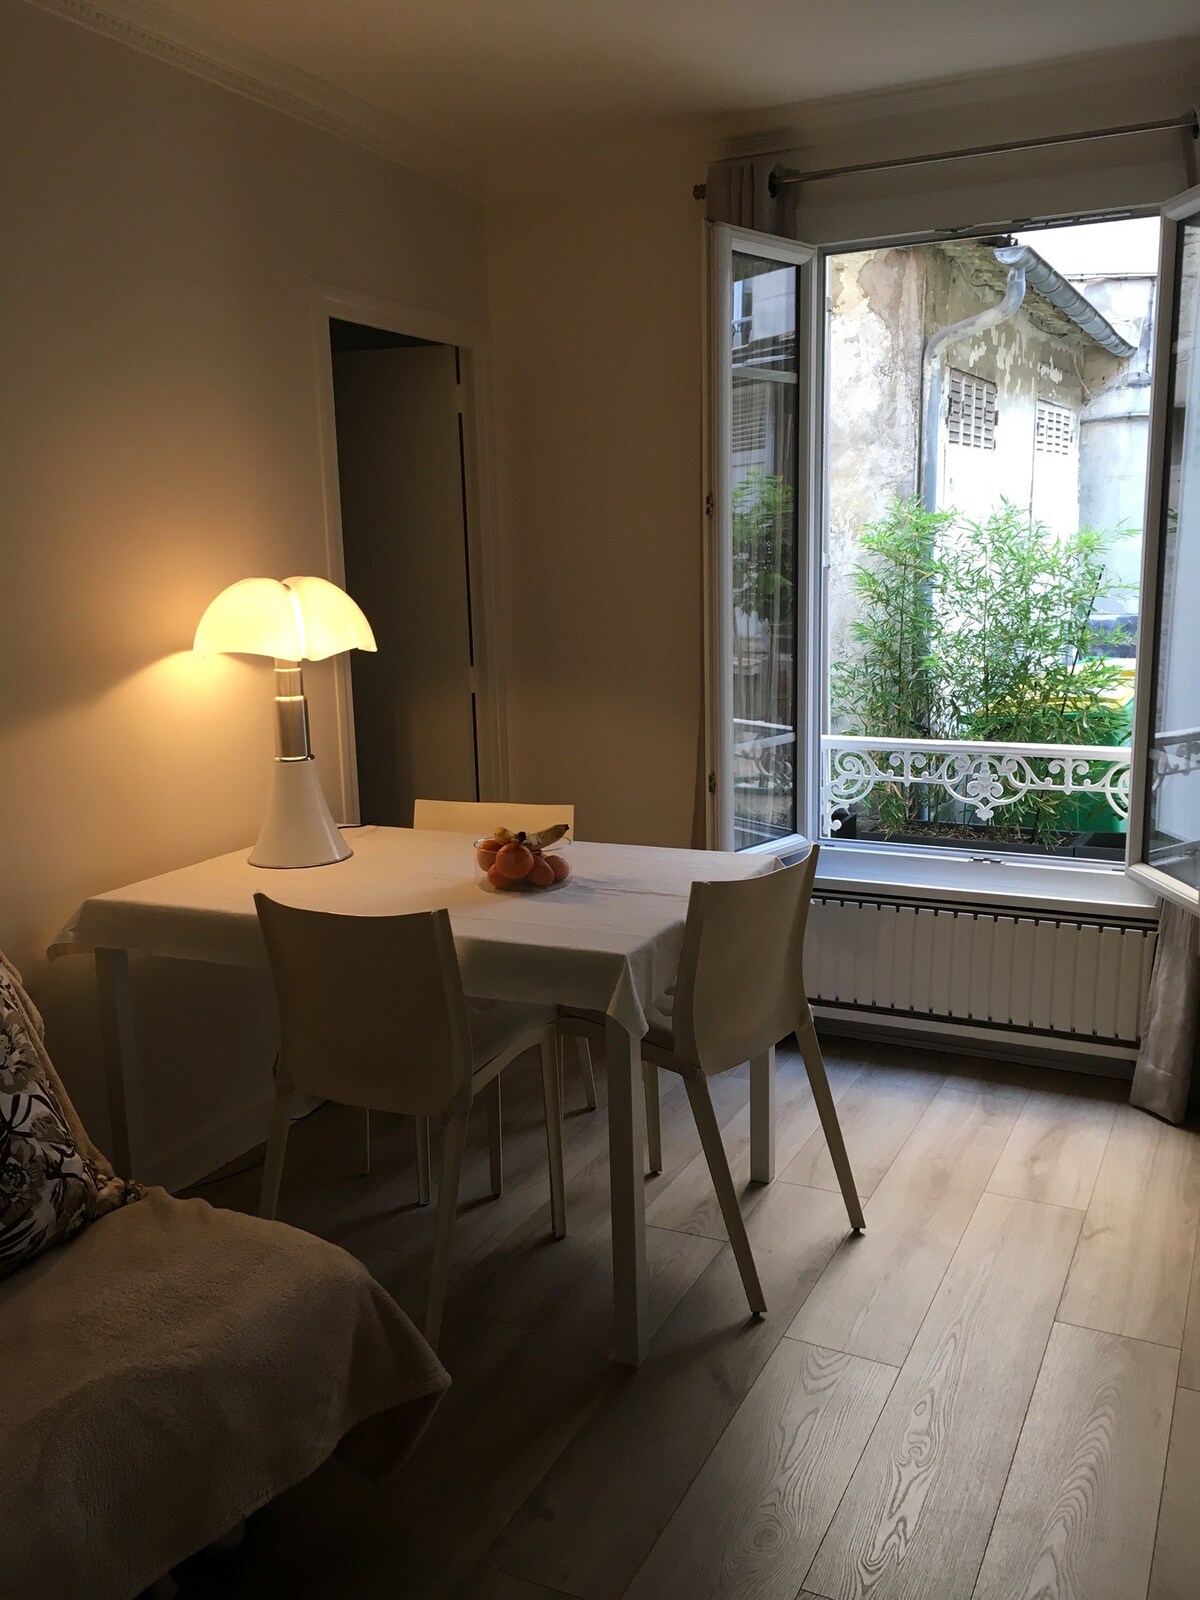 巴黎13
漂亮的公寓，一楼庭院，非常安静